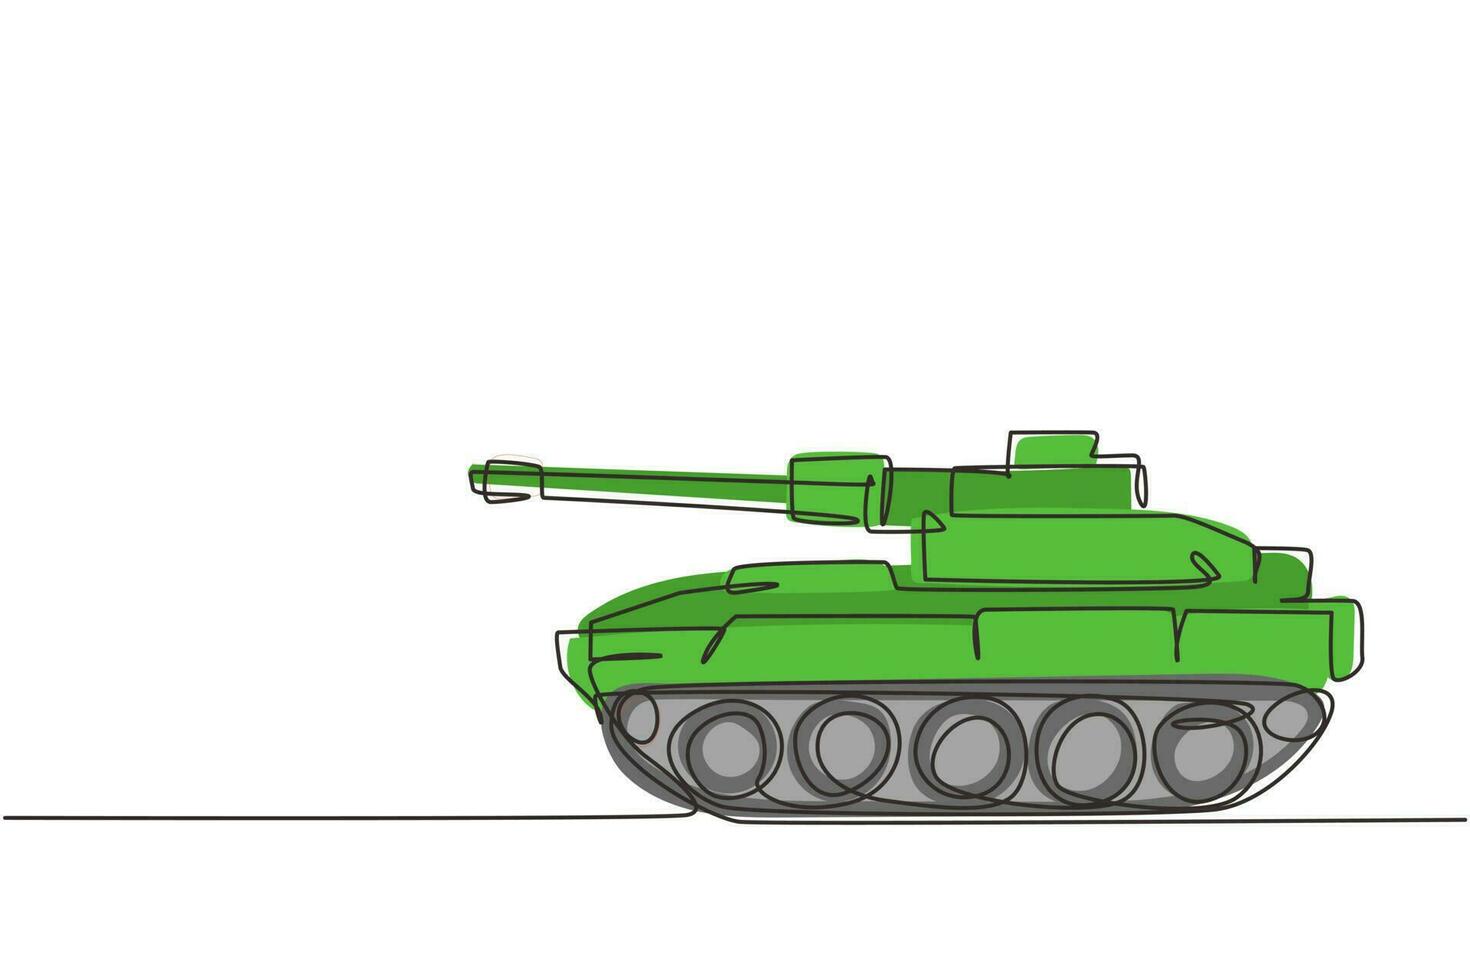 enda en rad teckning barns leksak stridsvagn. grön stridsvagn, bepansrade stridsfordon. militär transportenhet. barnleksaker underhållning. kontinuerlig linje rita design grafisk vektorillustration vektor